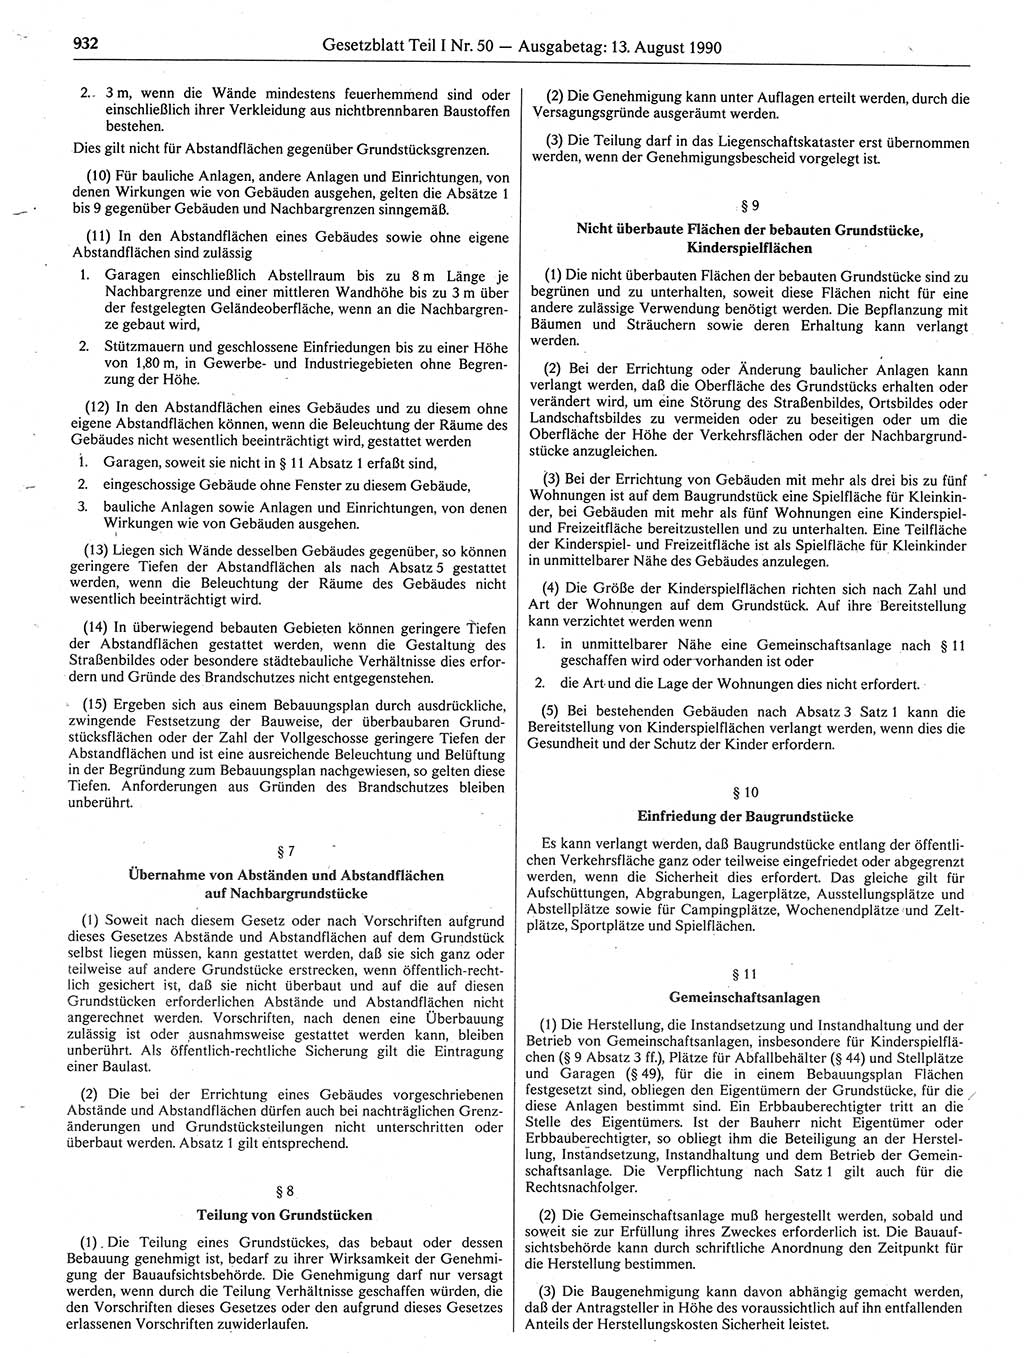 Gesetzblatt (GBl.) der Deutschen Demokratischen Republik (DDR) Teil Ⅰ 1990, Seite 932 (GBl. DDR Ⅰ 1990, S. 932)